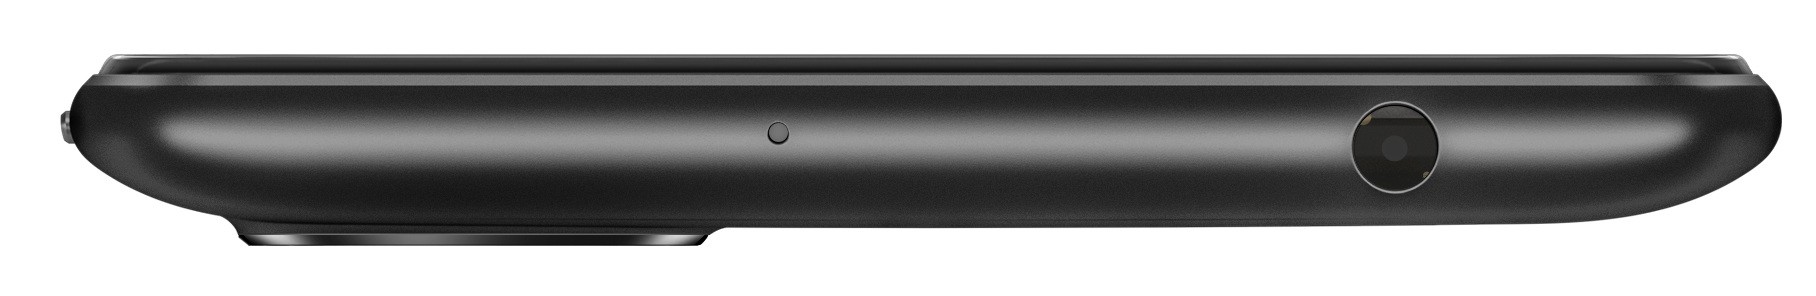 Xiaomi Redmi 6A 2/16GB Black EU